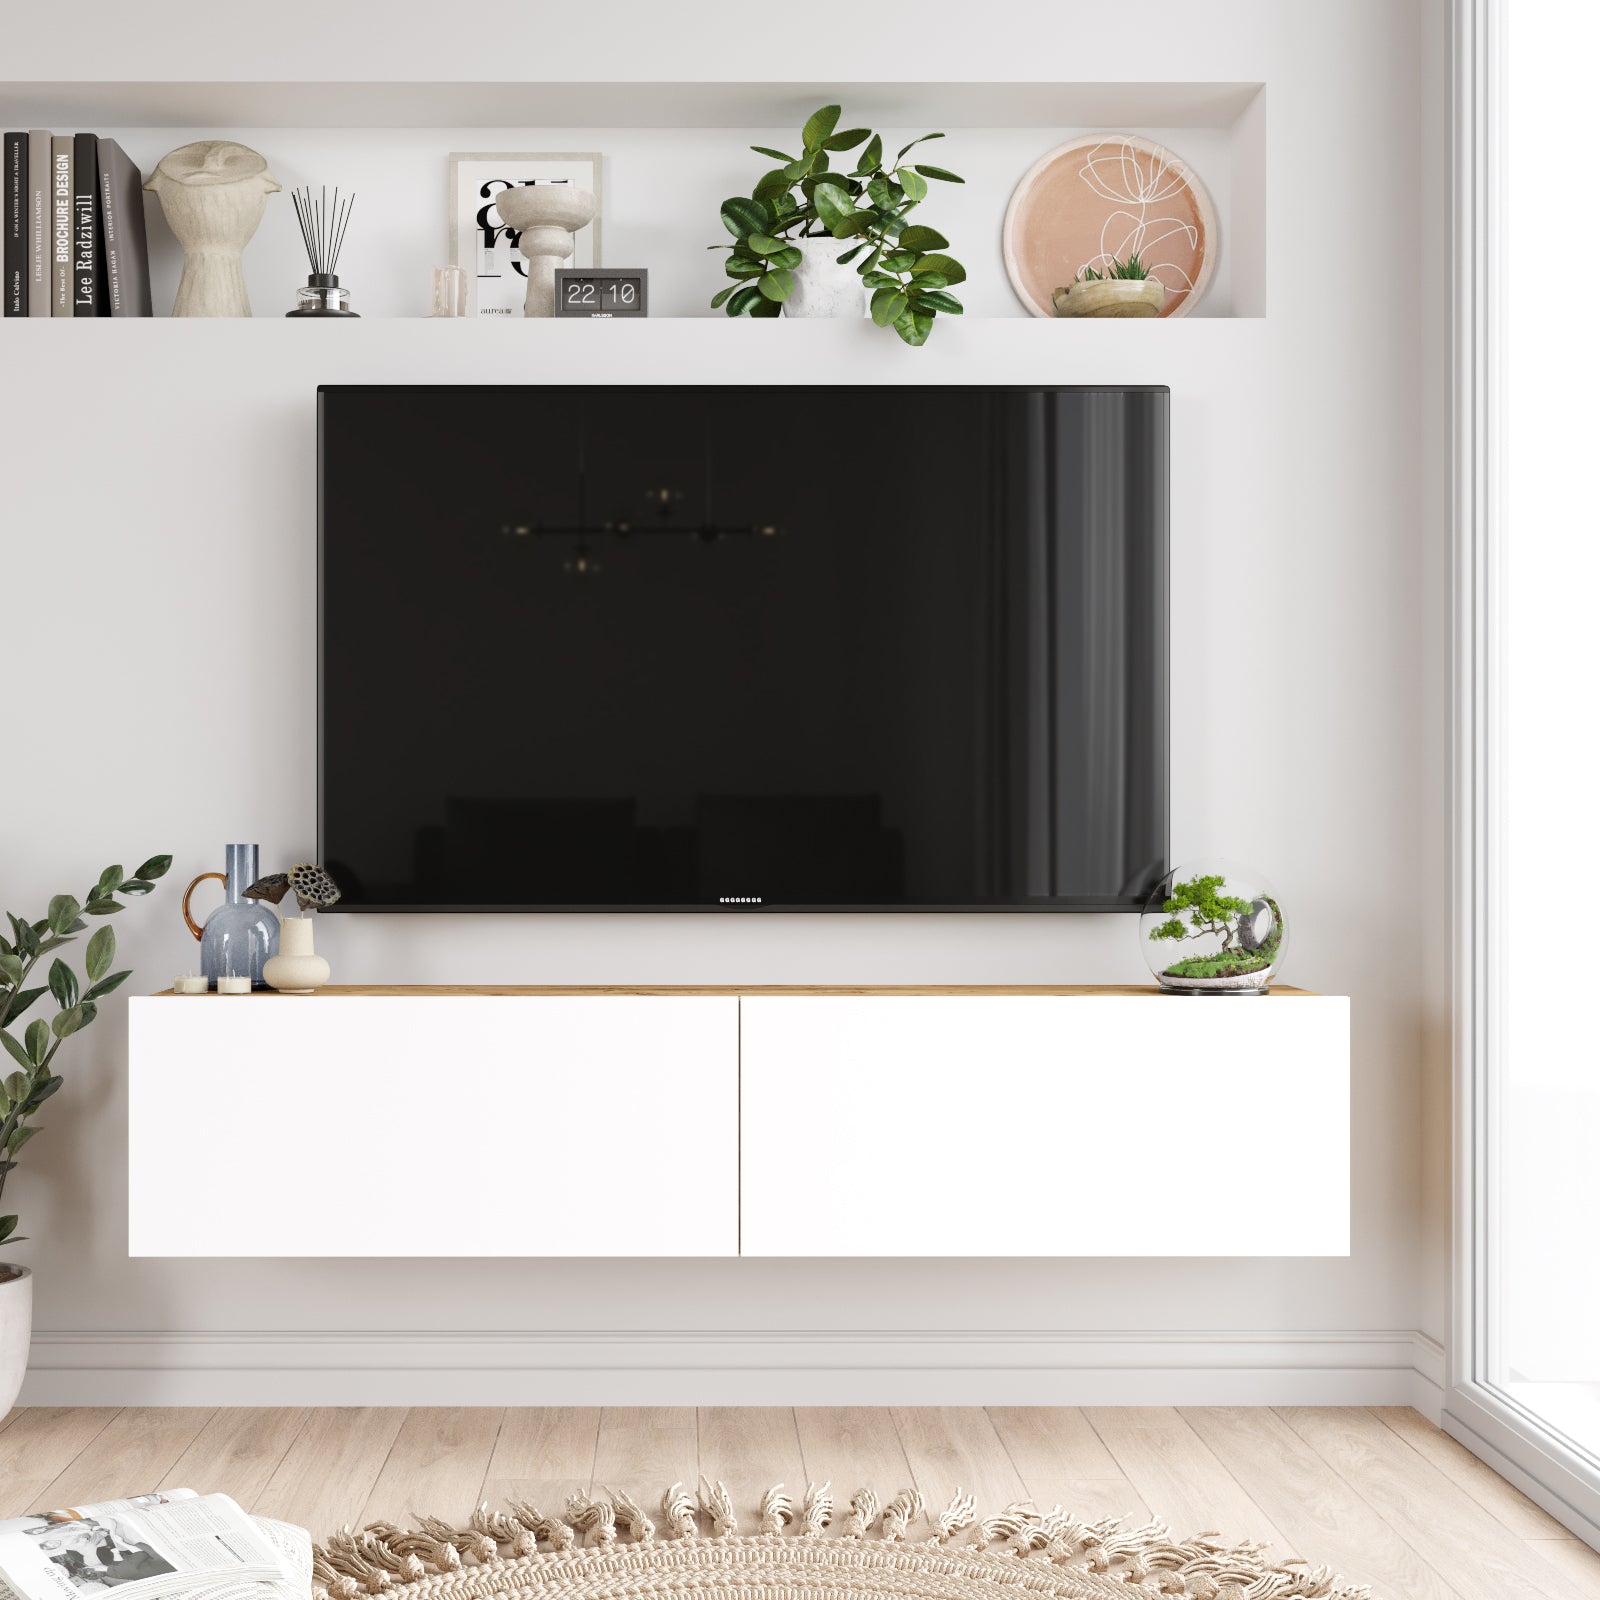 Bois-blanc-Meuble TV suspendu 'OASIS' de 140 cm en bois type naturel avec étagères ouvertes pour salon moderne